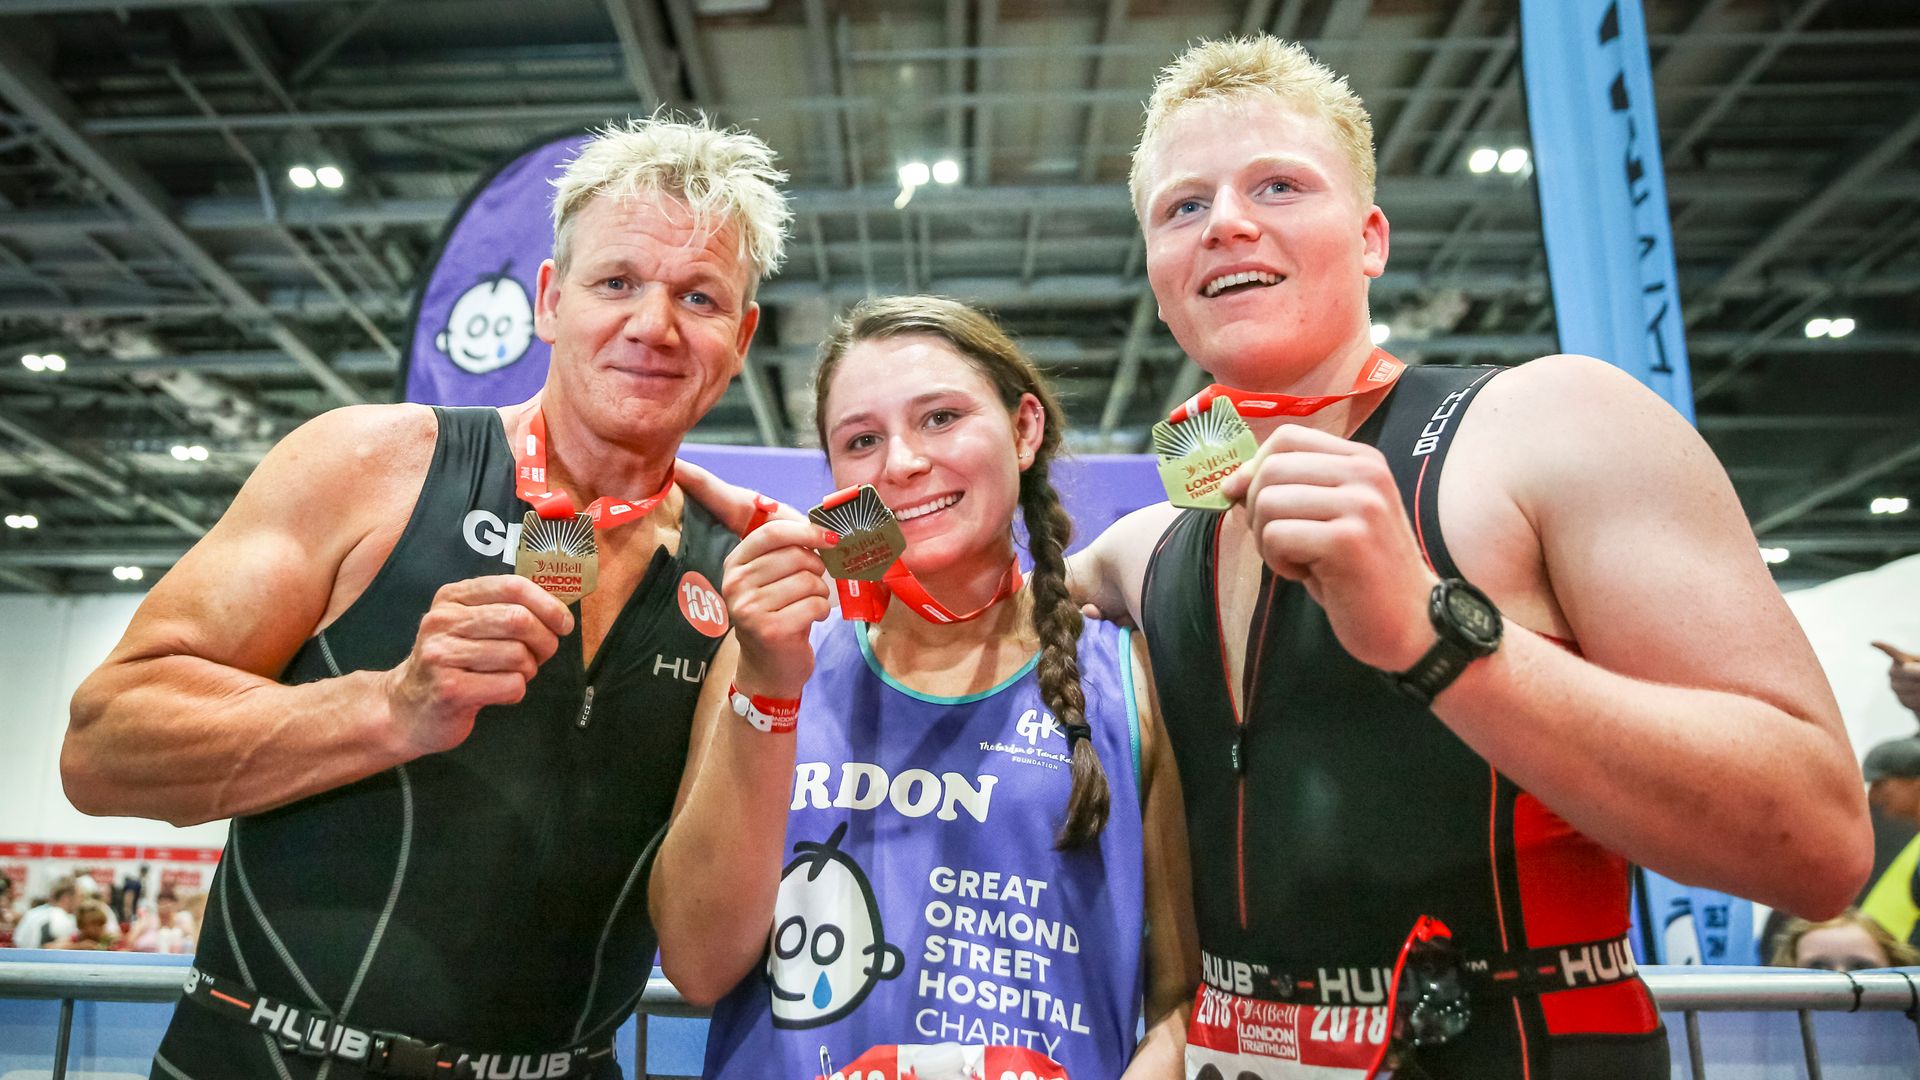 Gordon Ramsay, Megan and Jack Scott Ramsay hold up medals